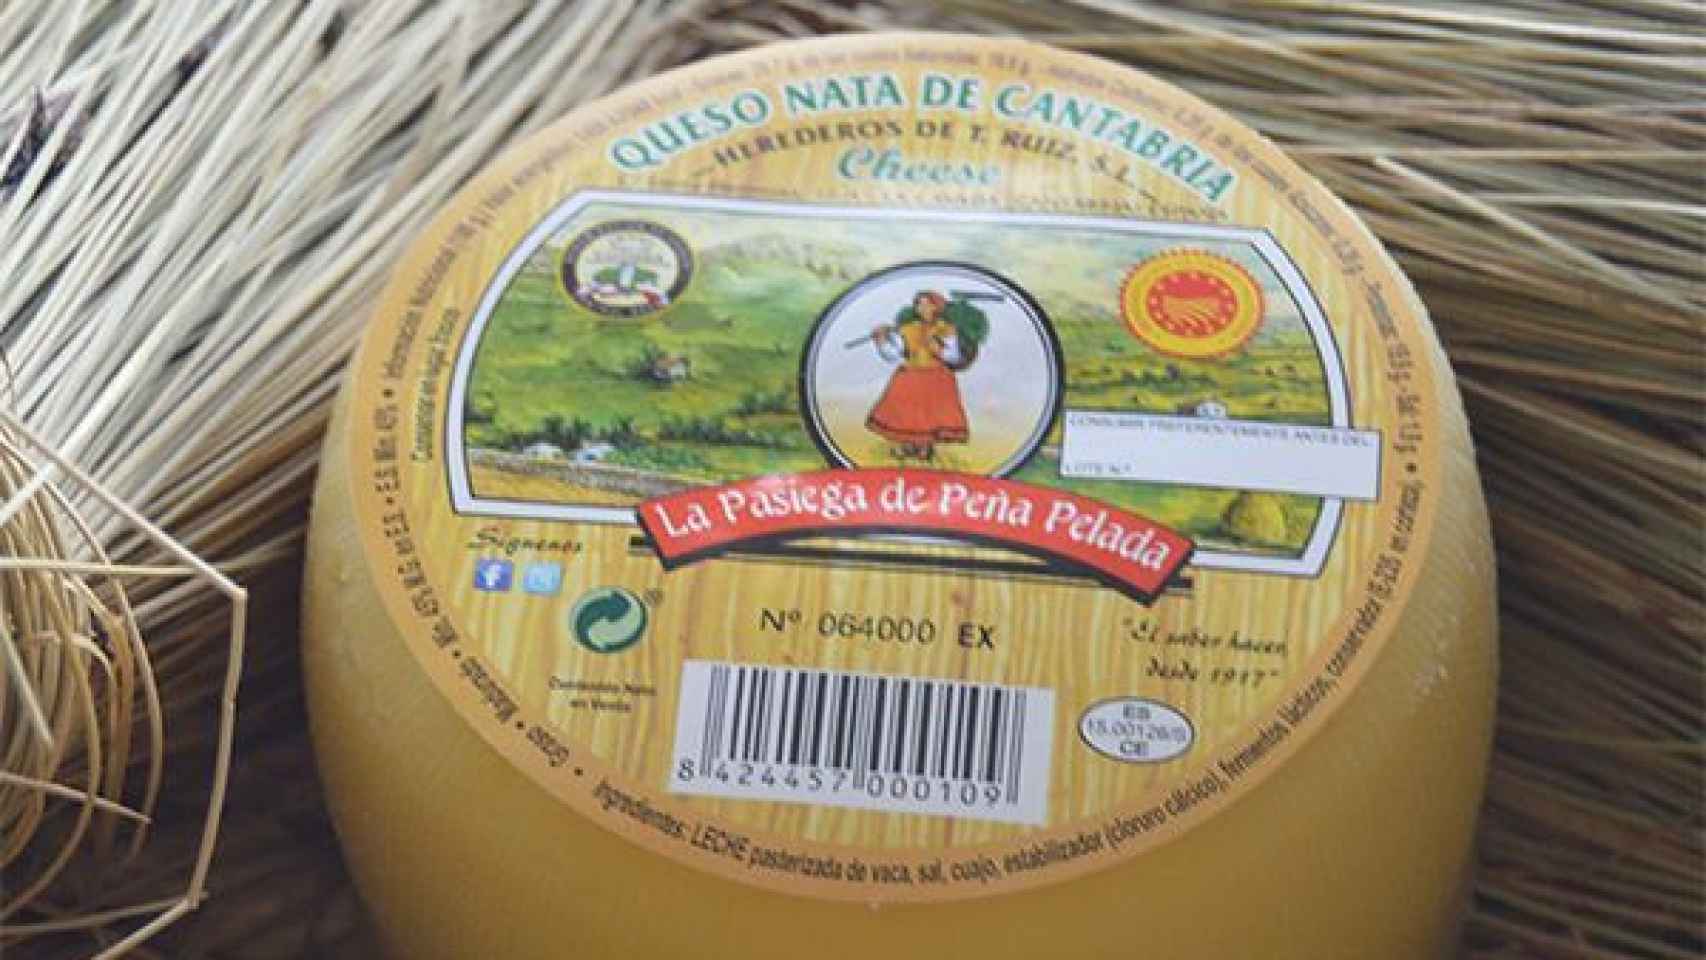 El queso La Pasiega de Peña Pelada, con D.O. Nata de Cantabria.